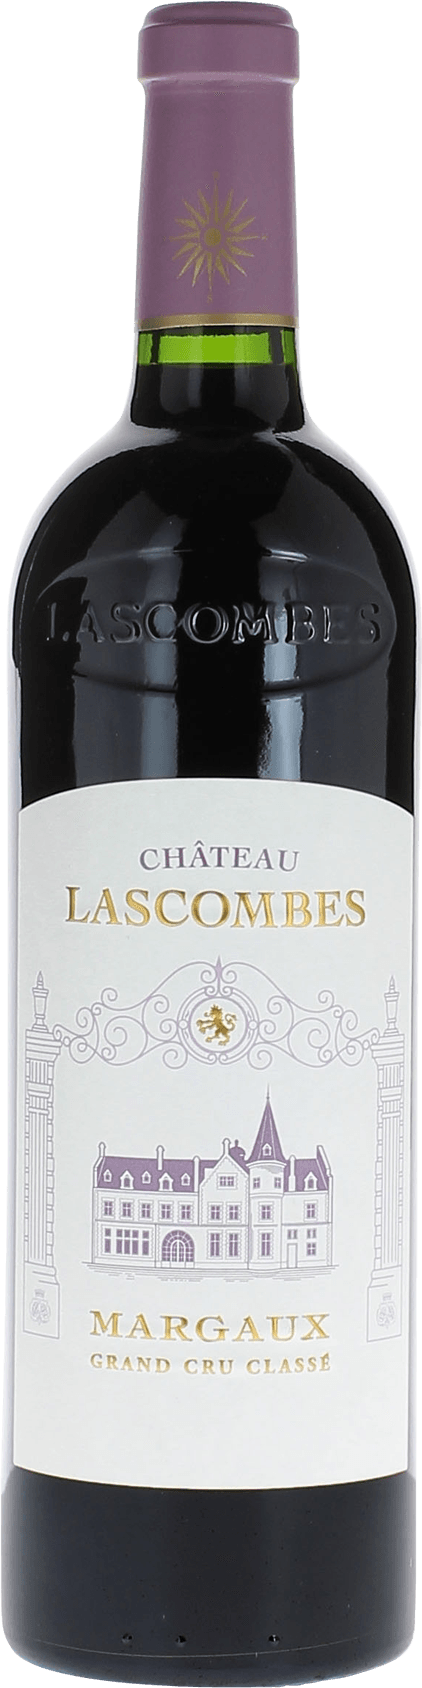 Lascombes 1989 2me Grand cru class Margaux, Bordeaux rouge